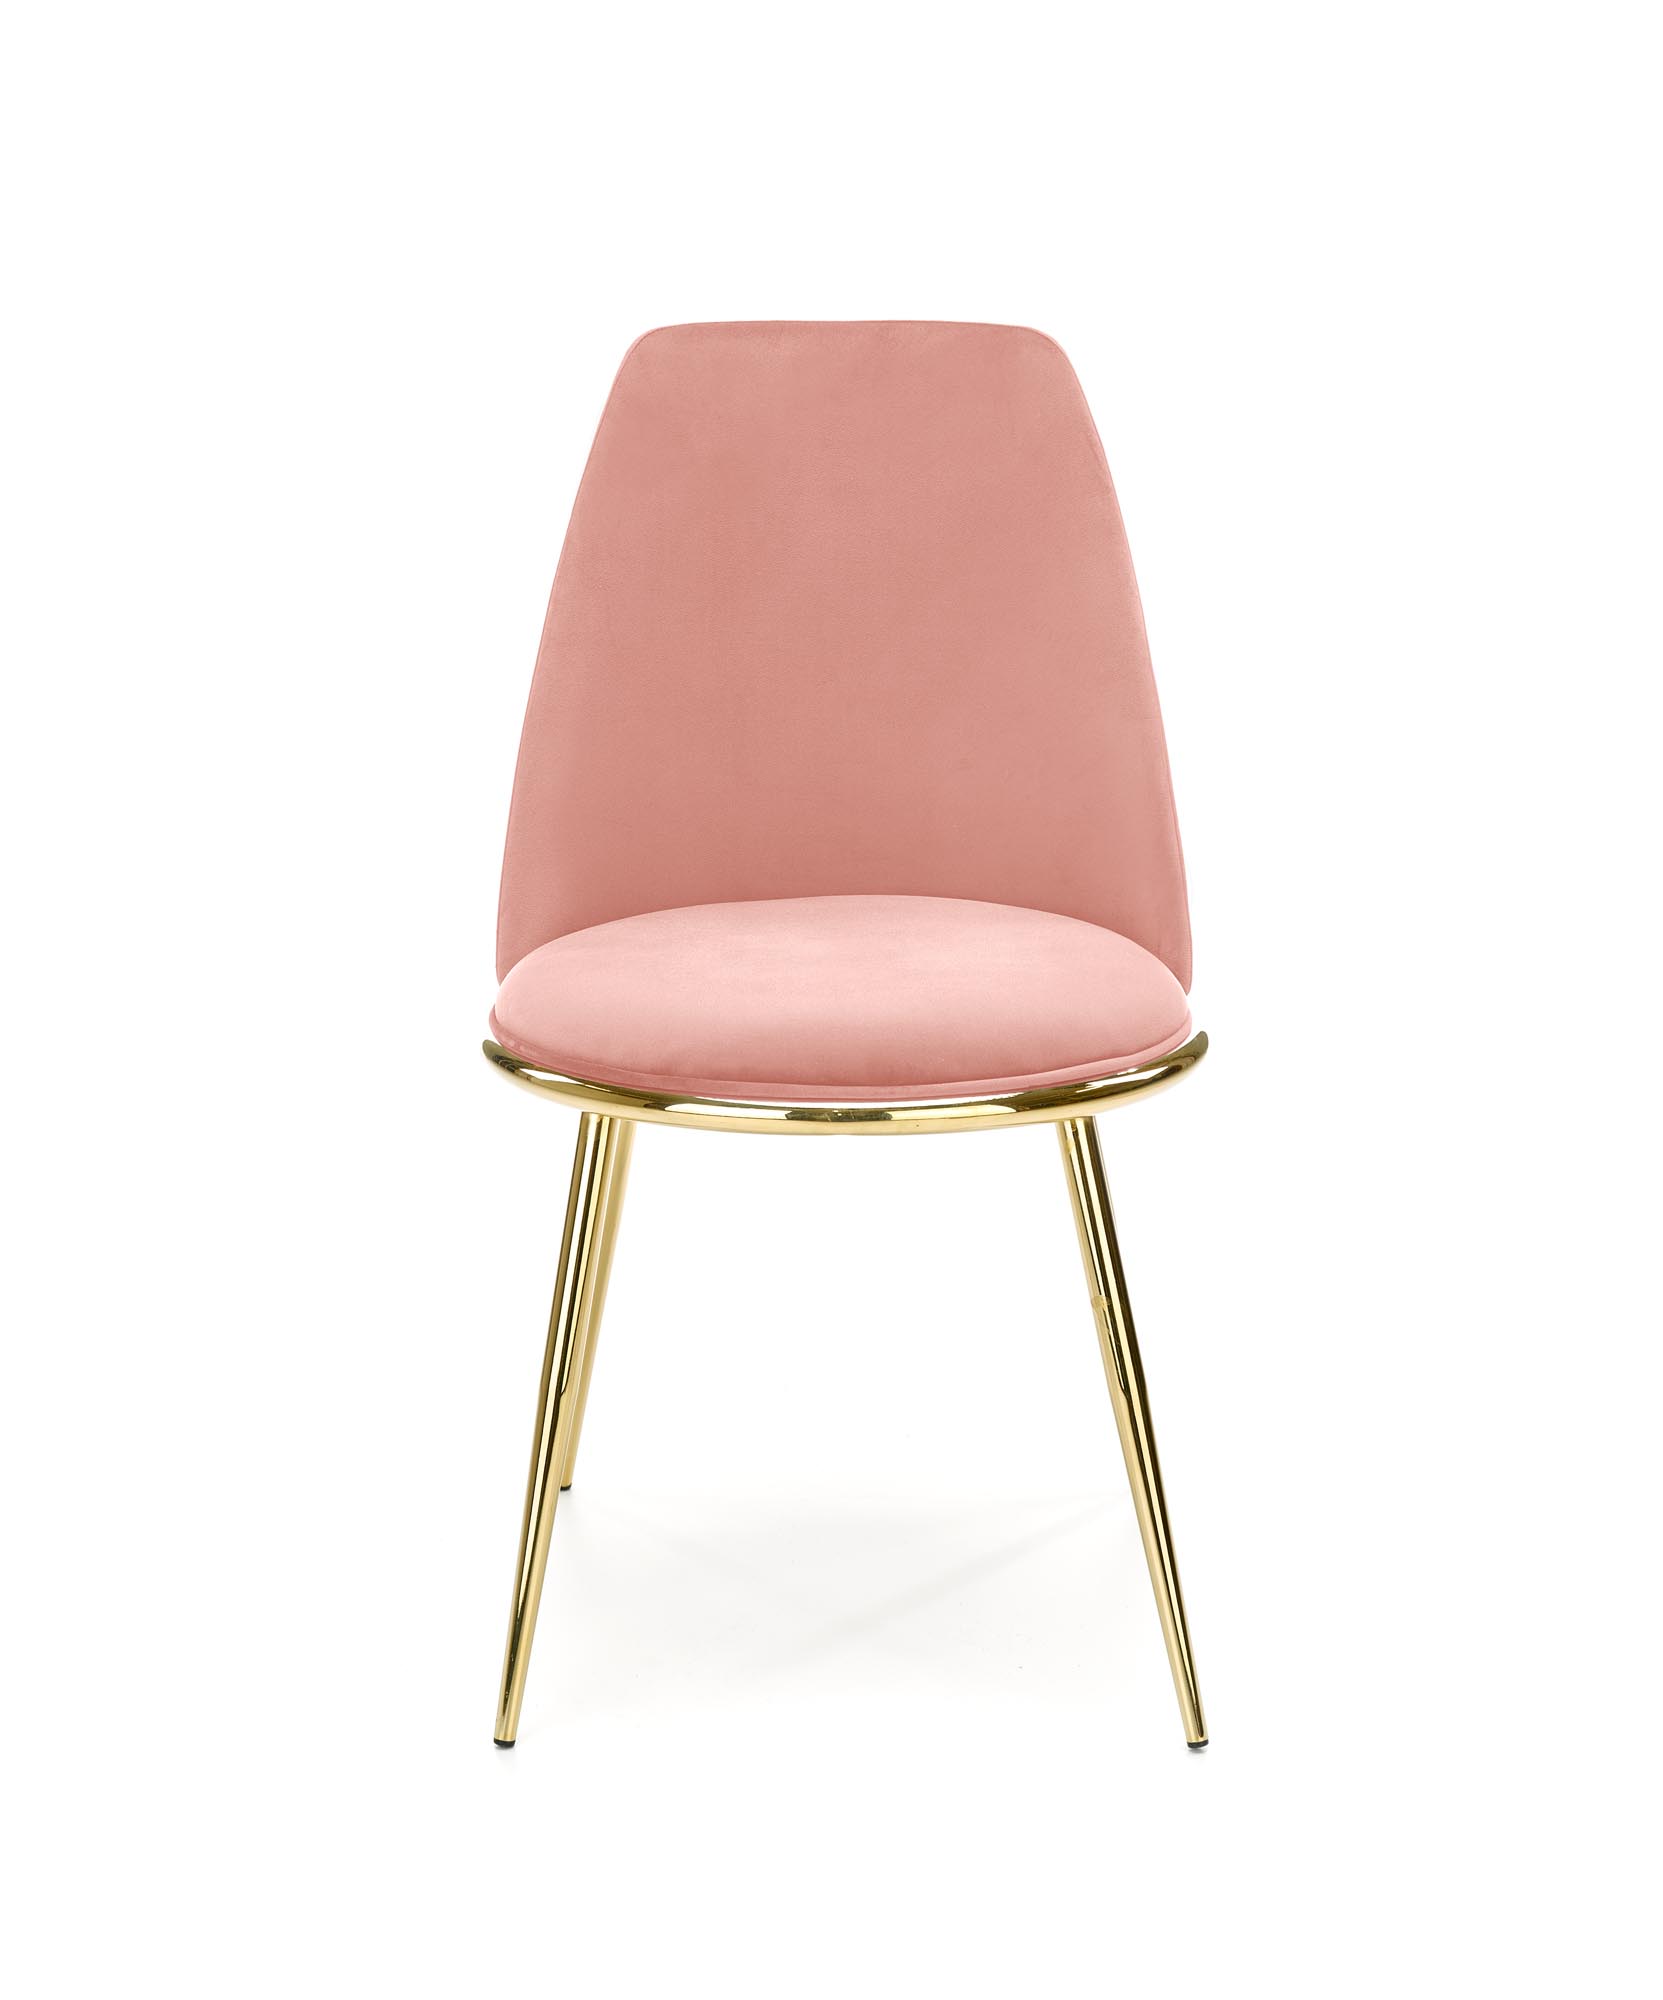 K460 krzesło różowy k460 krzesło różowy